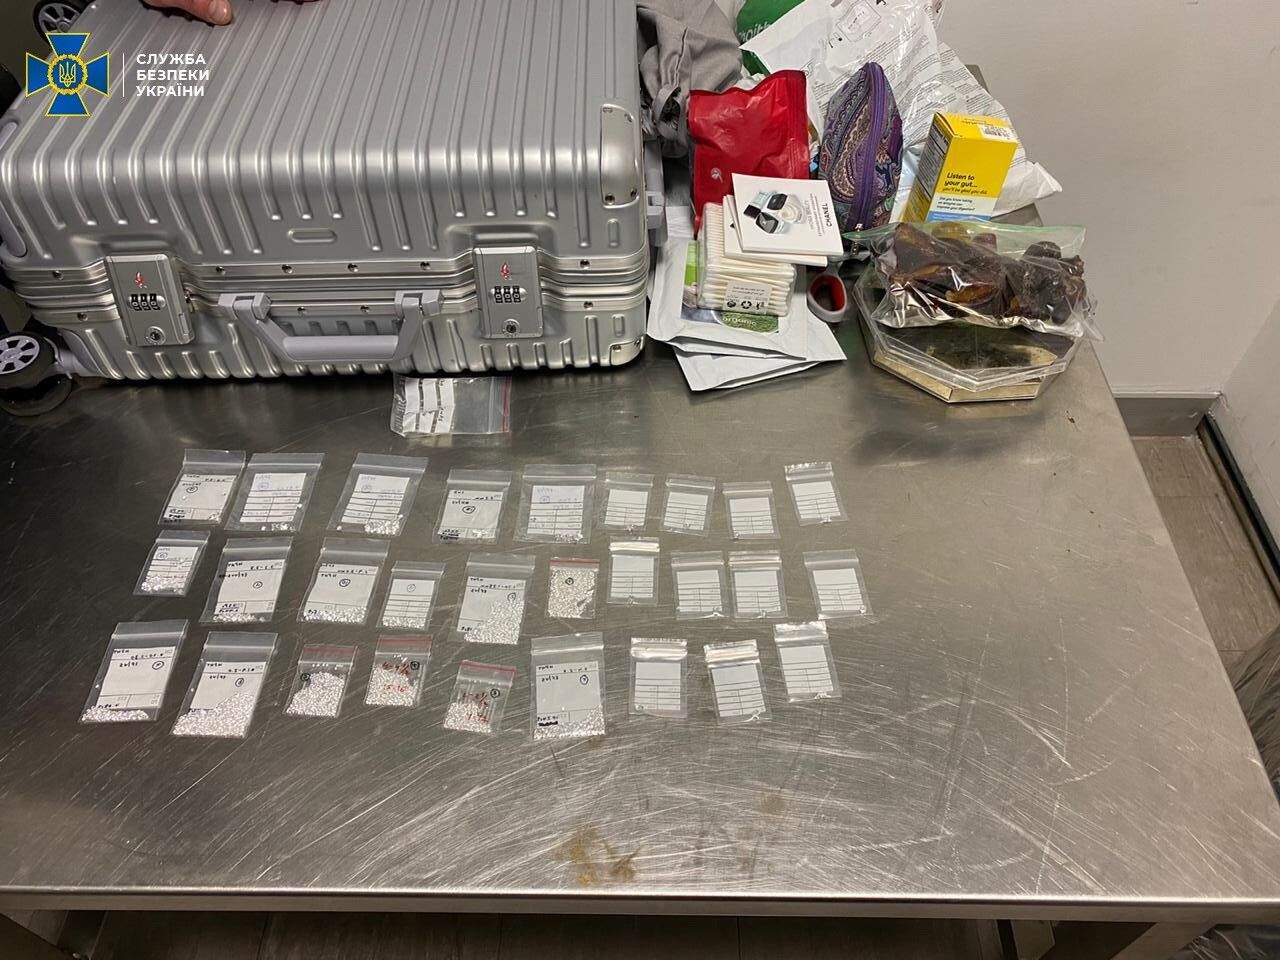 Правоохранители изъяли 38 пакетиков с бриллиантами